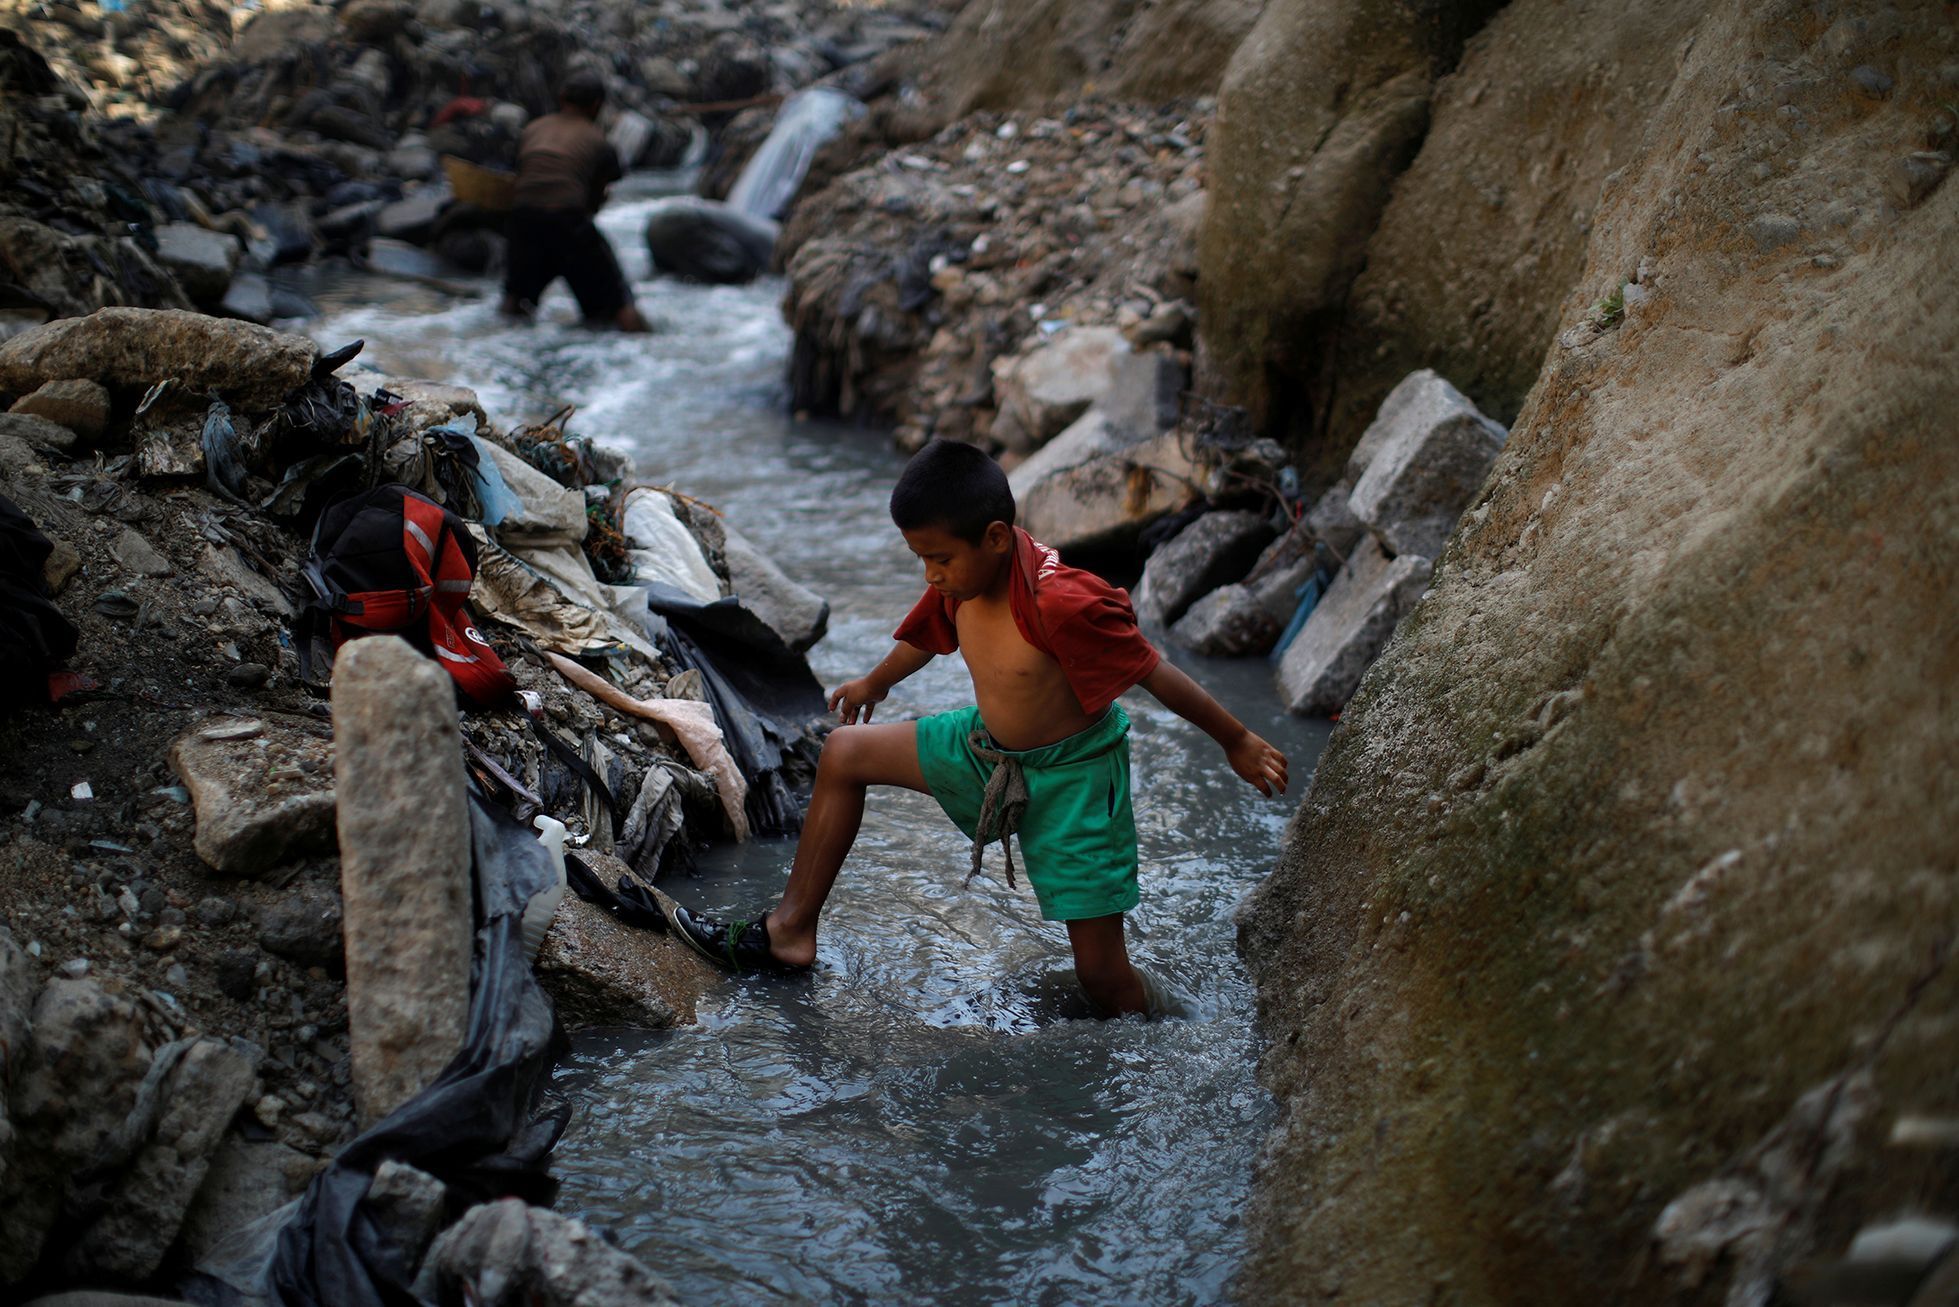 Fotogalerie / Sběrači kovů na megaskládce v Guatemale / Reuters / 2019